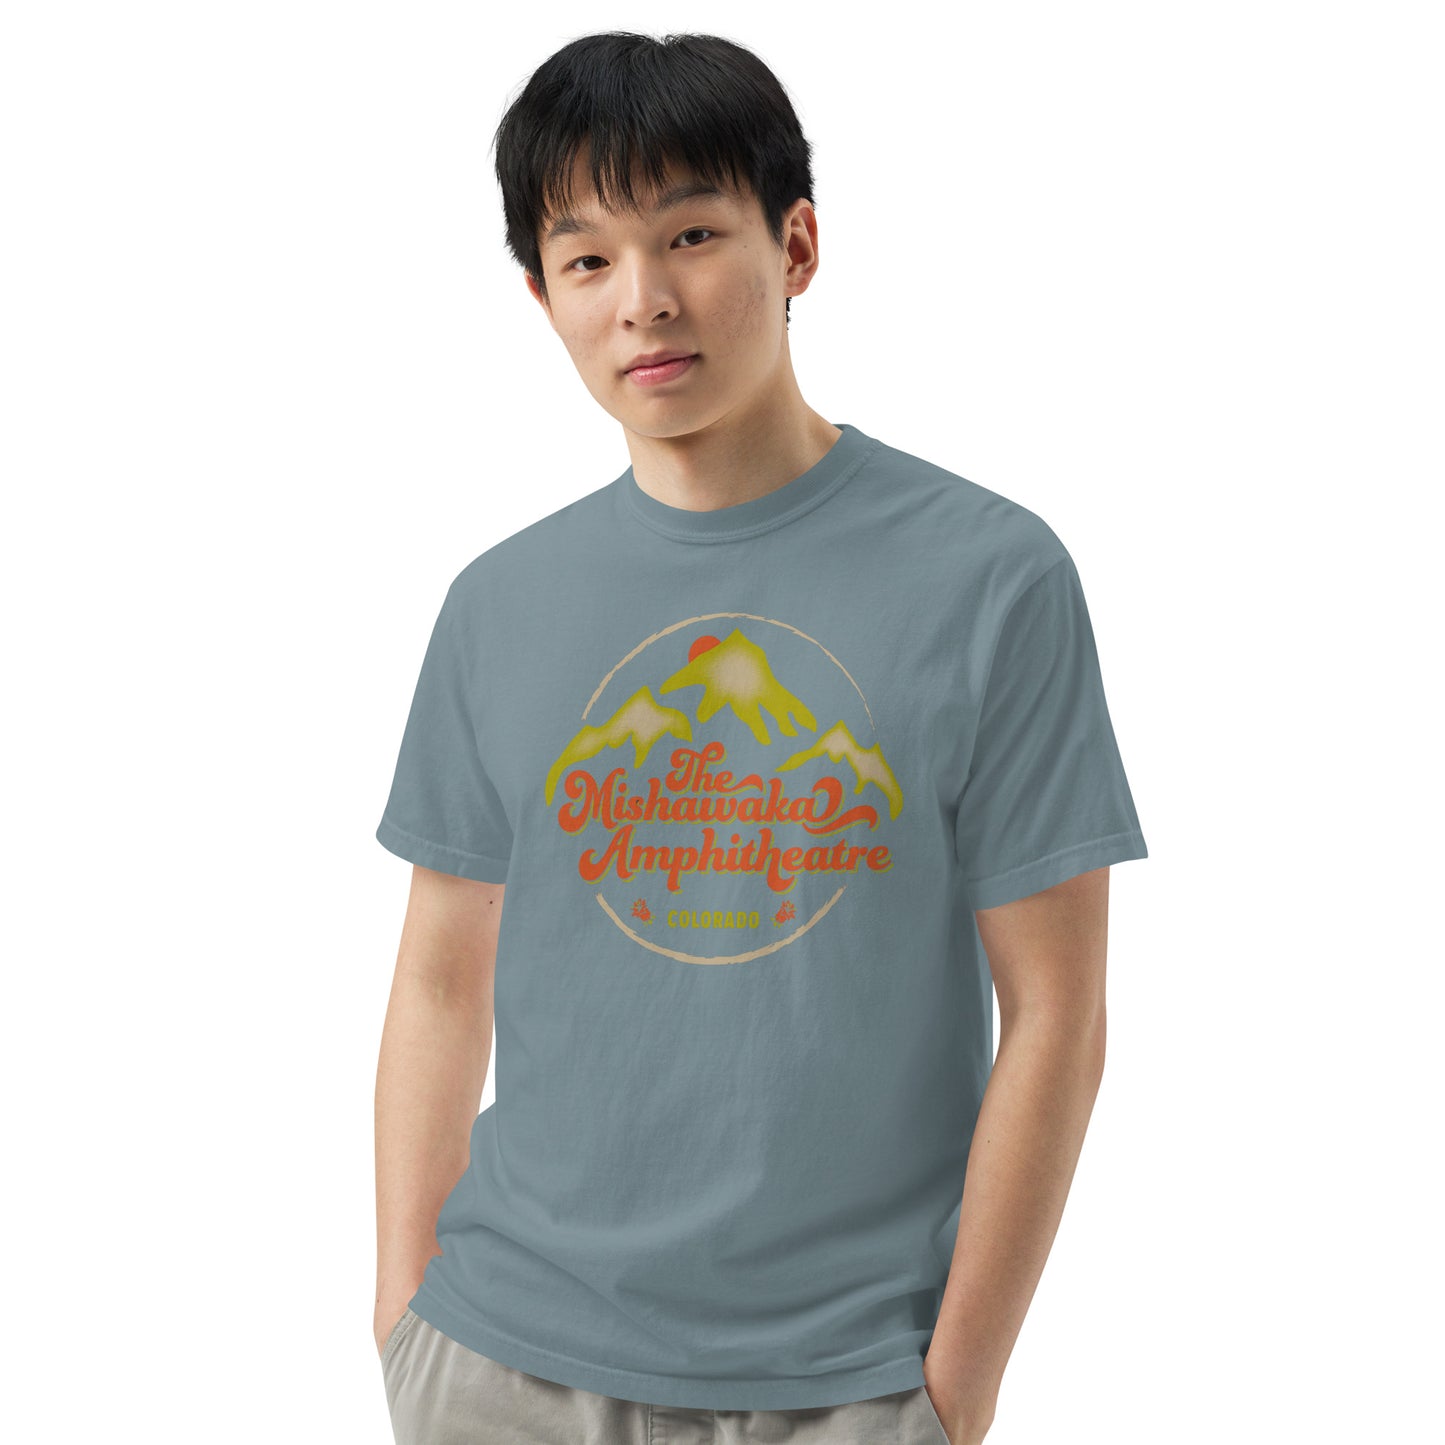 Mishawaka Mountains Unisex T-Shirt